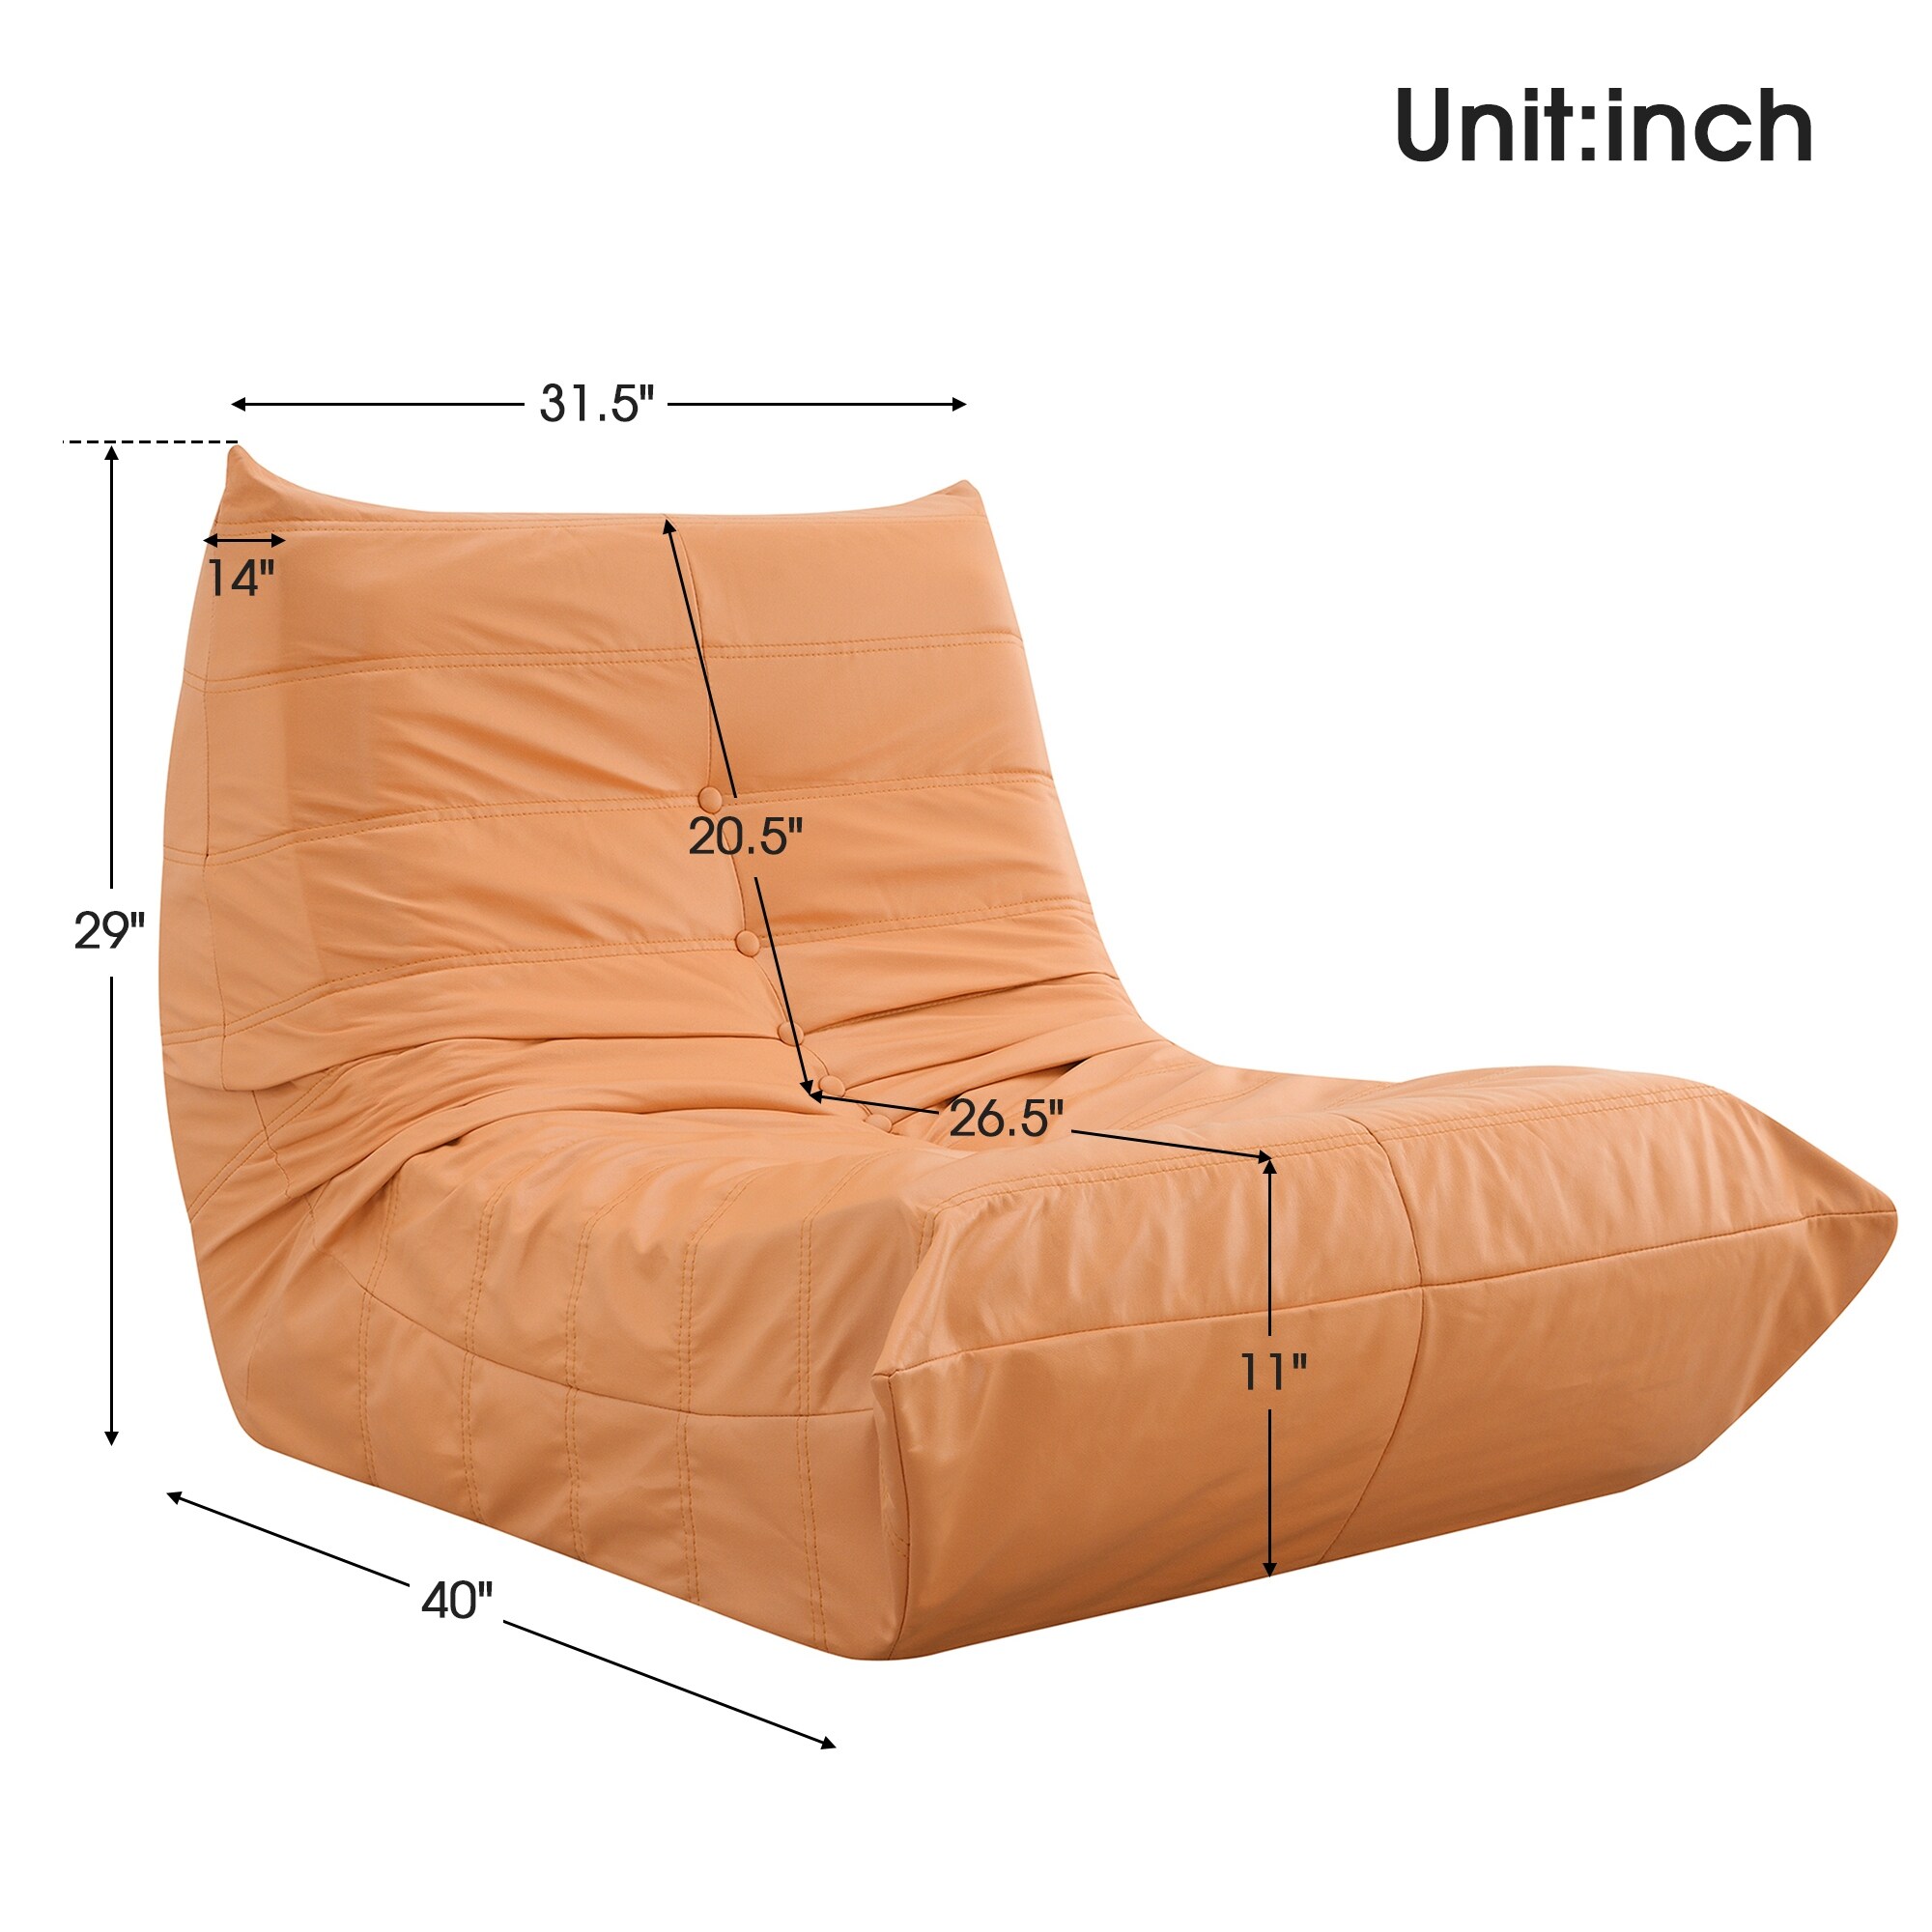 Ergonomic Linen Bean Bag Chairs - Just Add Filler! - 14Candles